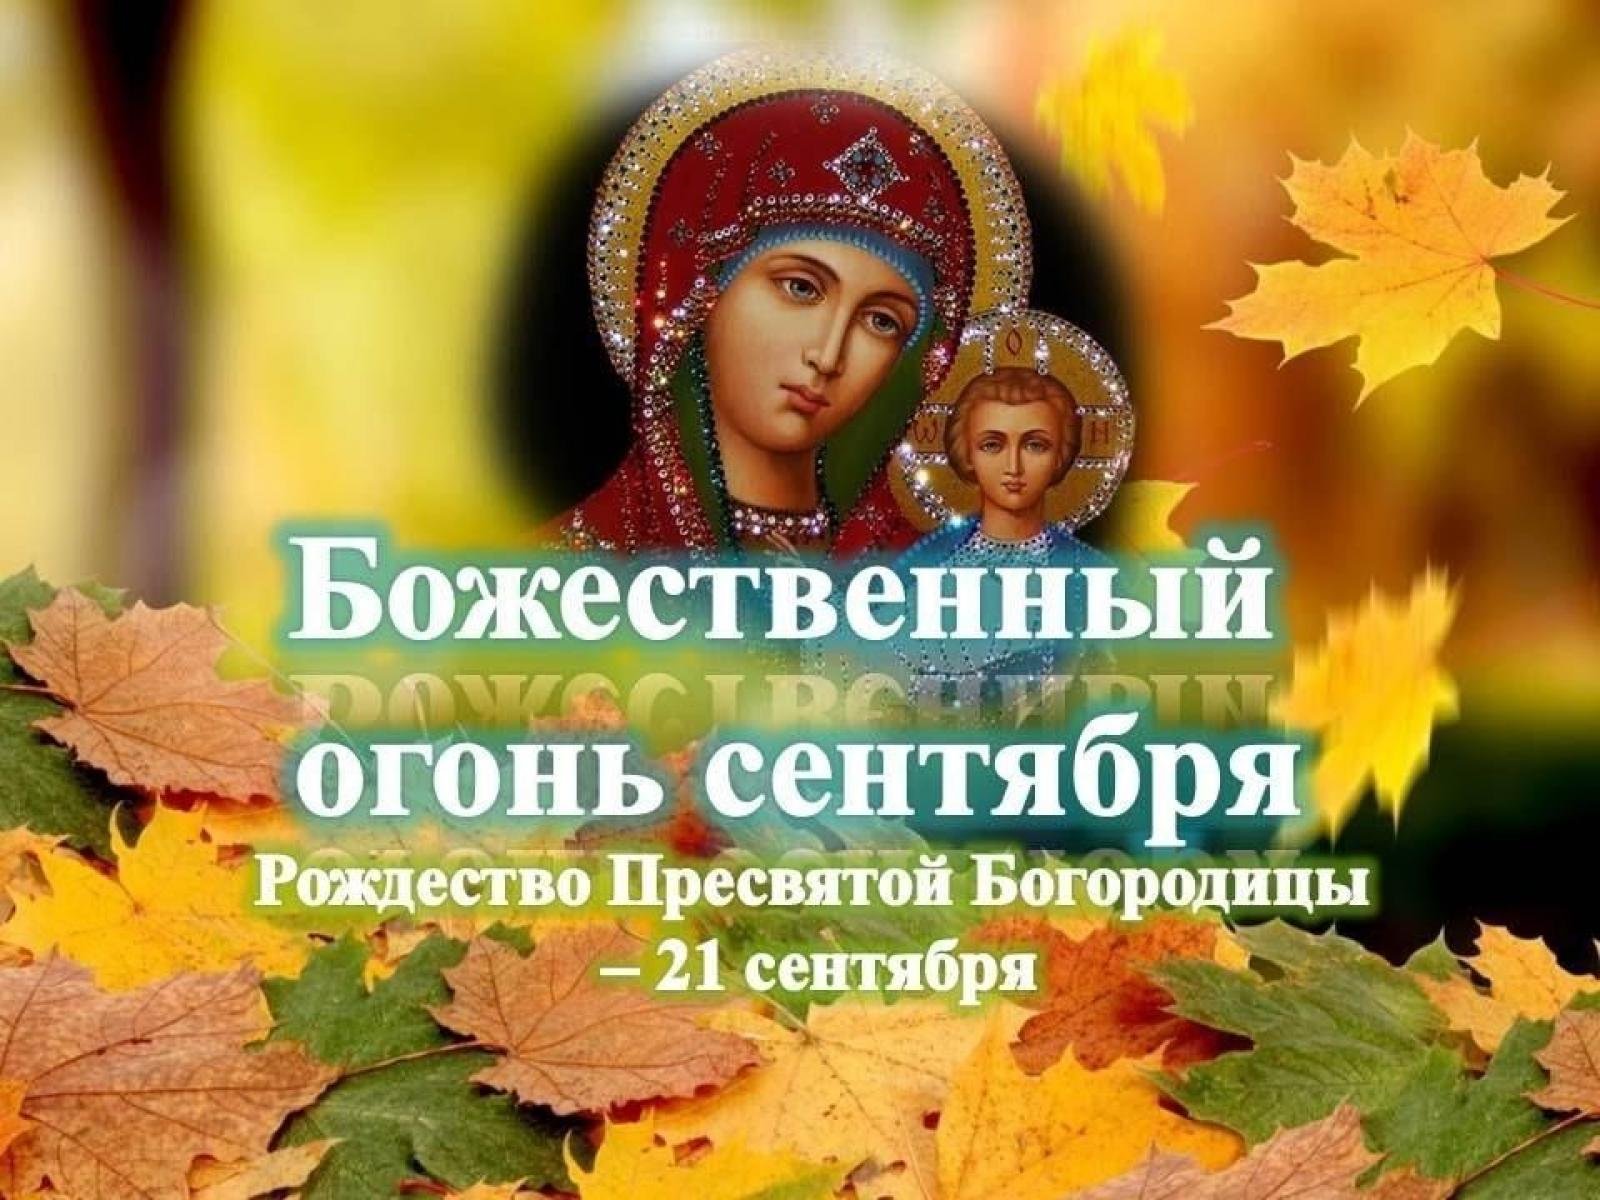 21 апреля праздник православный. 21сентебря Рождество Пресвятой Богородицы. С праздником Рождества Пресвятой Богородицы. С праздником Рождества Пресвятой Богородицы 21 сентября. С Рождеством Пресвятой Богородице.